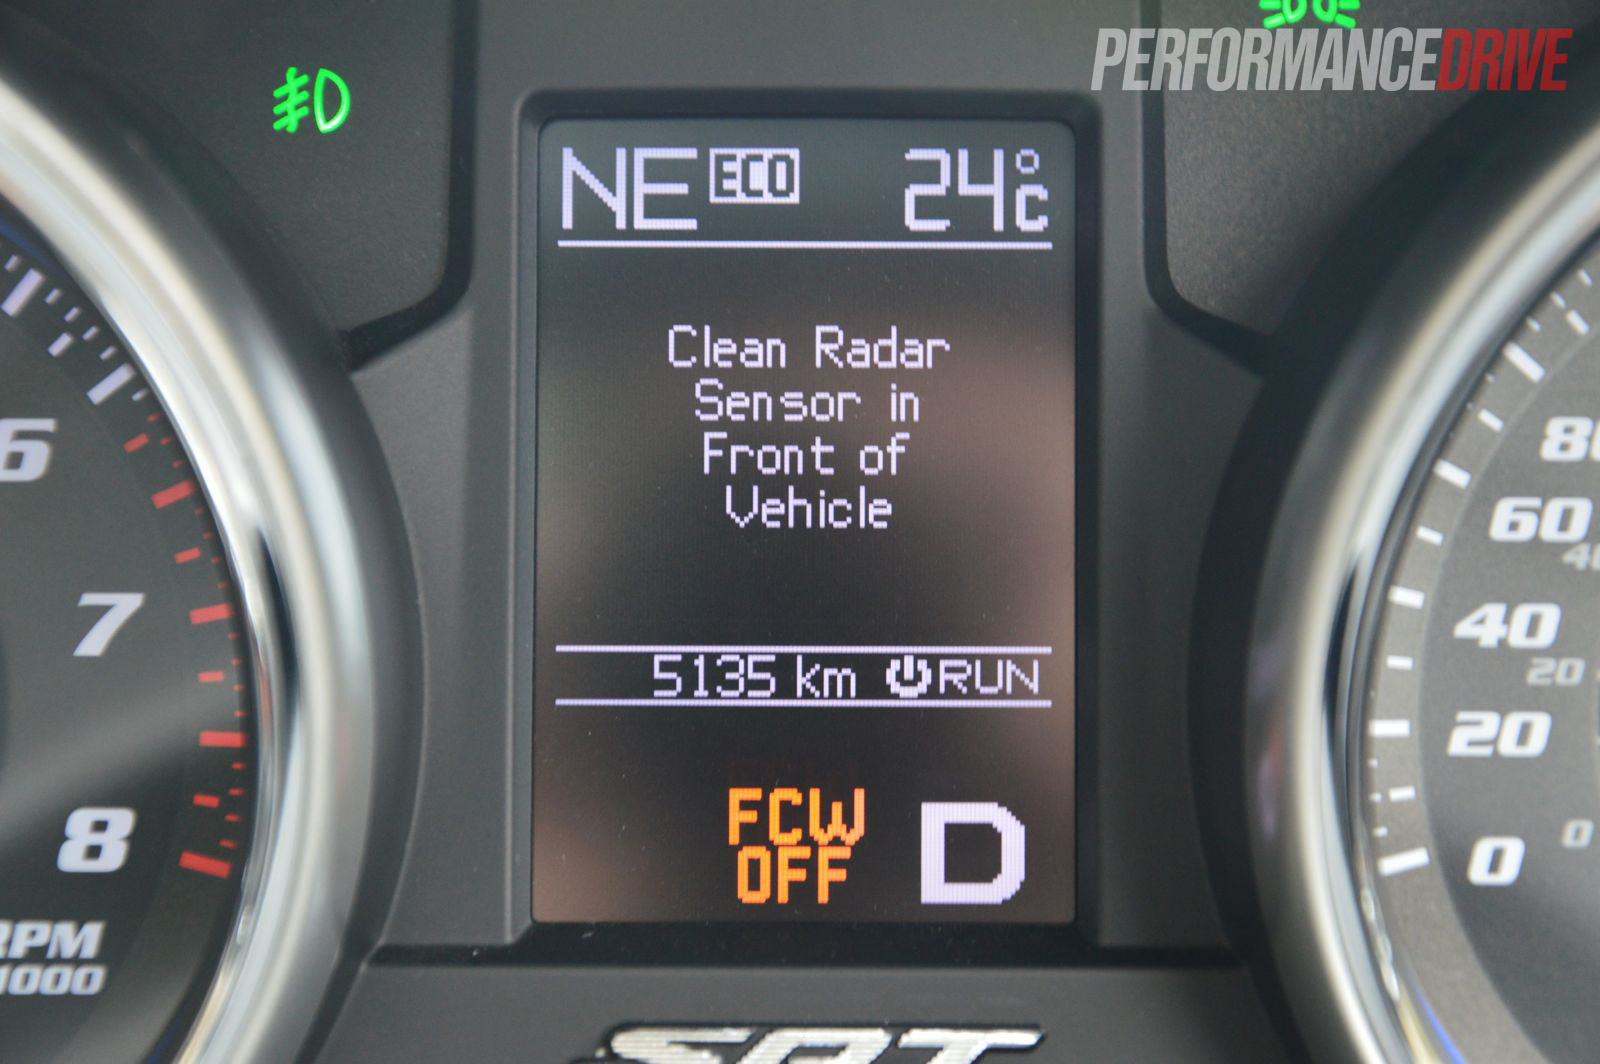 2013 Jeep Grand Cherokee SRT8 dirty radar sensor